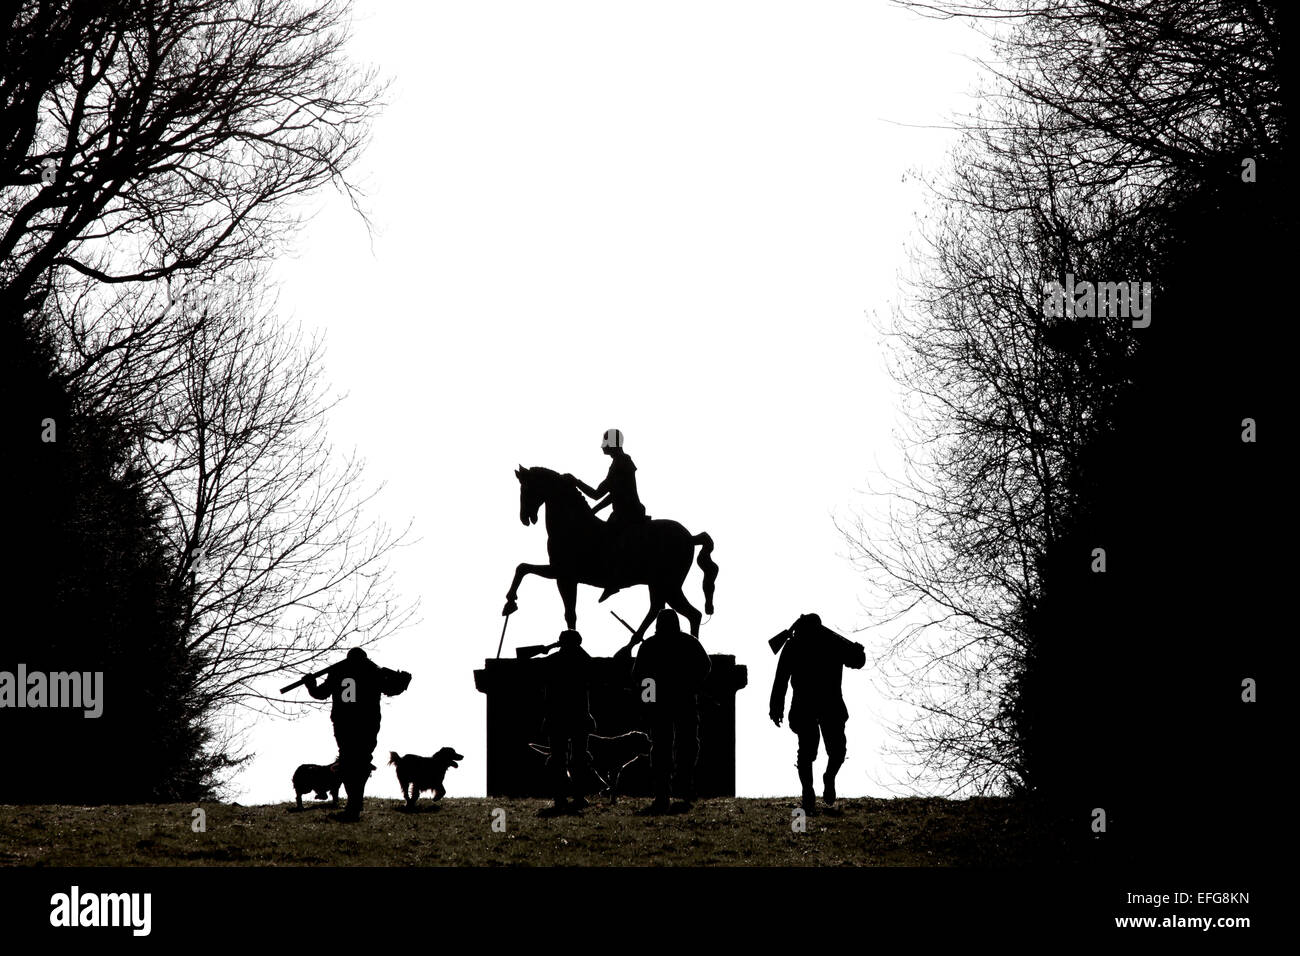 Silueta en blanco y negro de dos hombres y perros de muestra por estatua de jinete en West Wycombe park, Buckinghamshire, reino unido Foto de stock